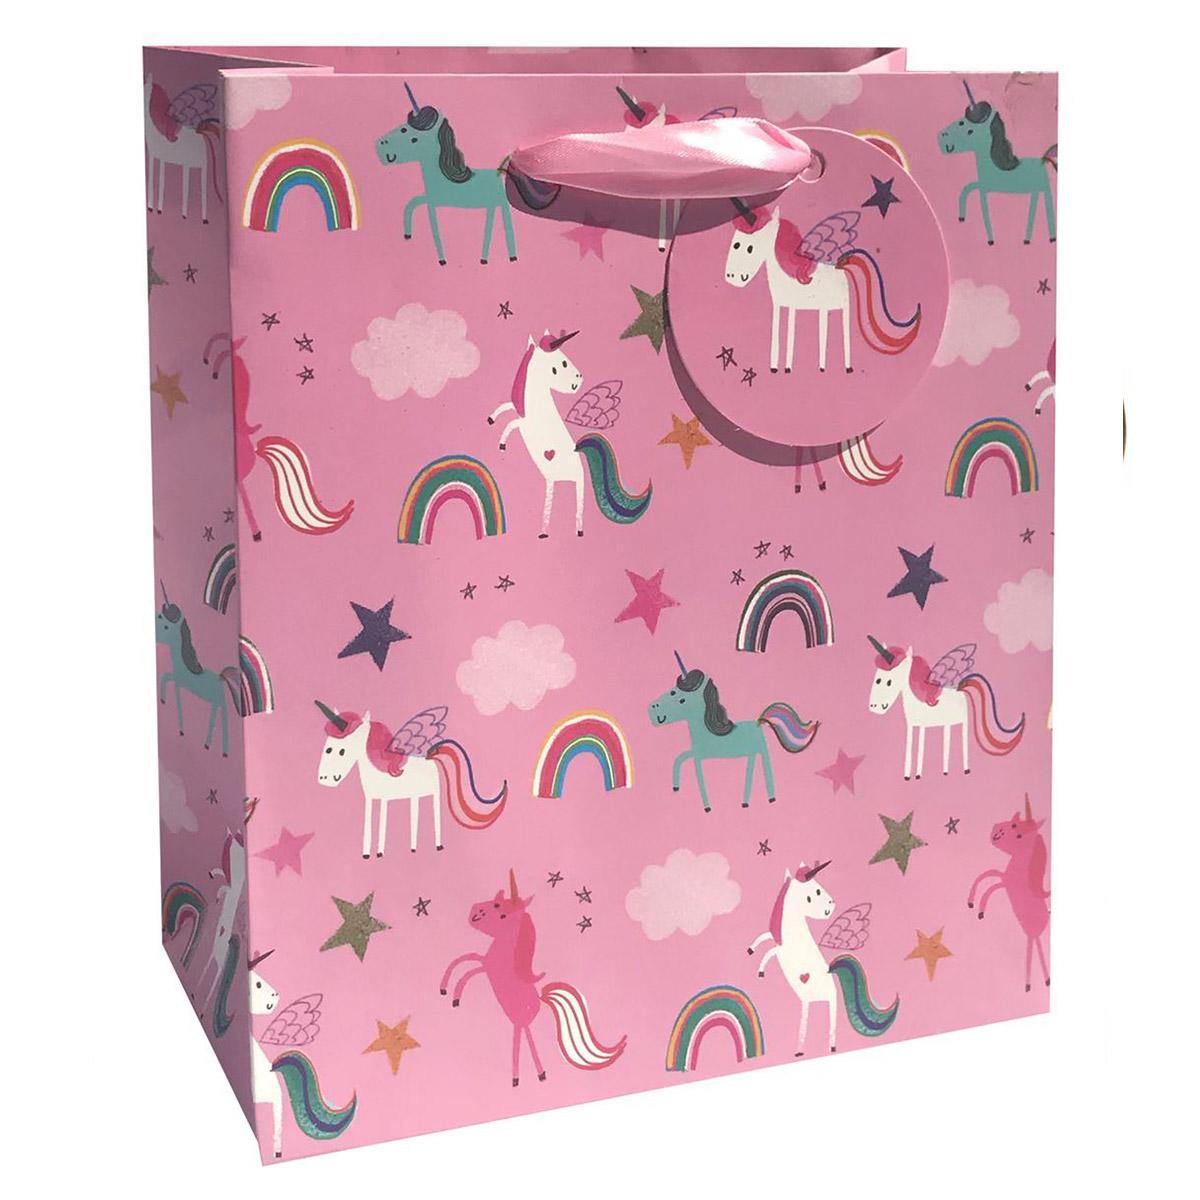 Unicorn Themed Medium Gift Bag Shown Full Face